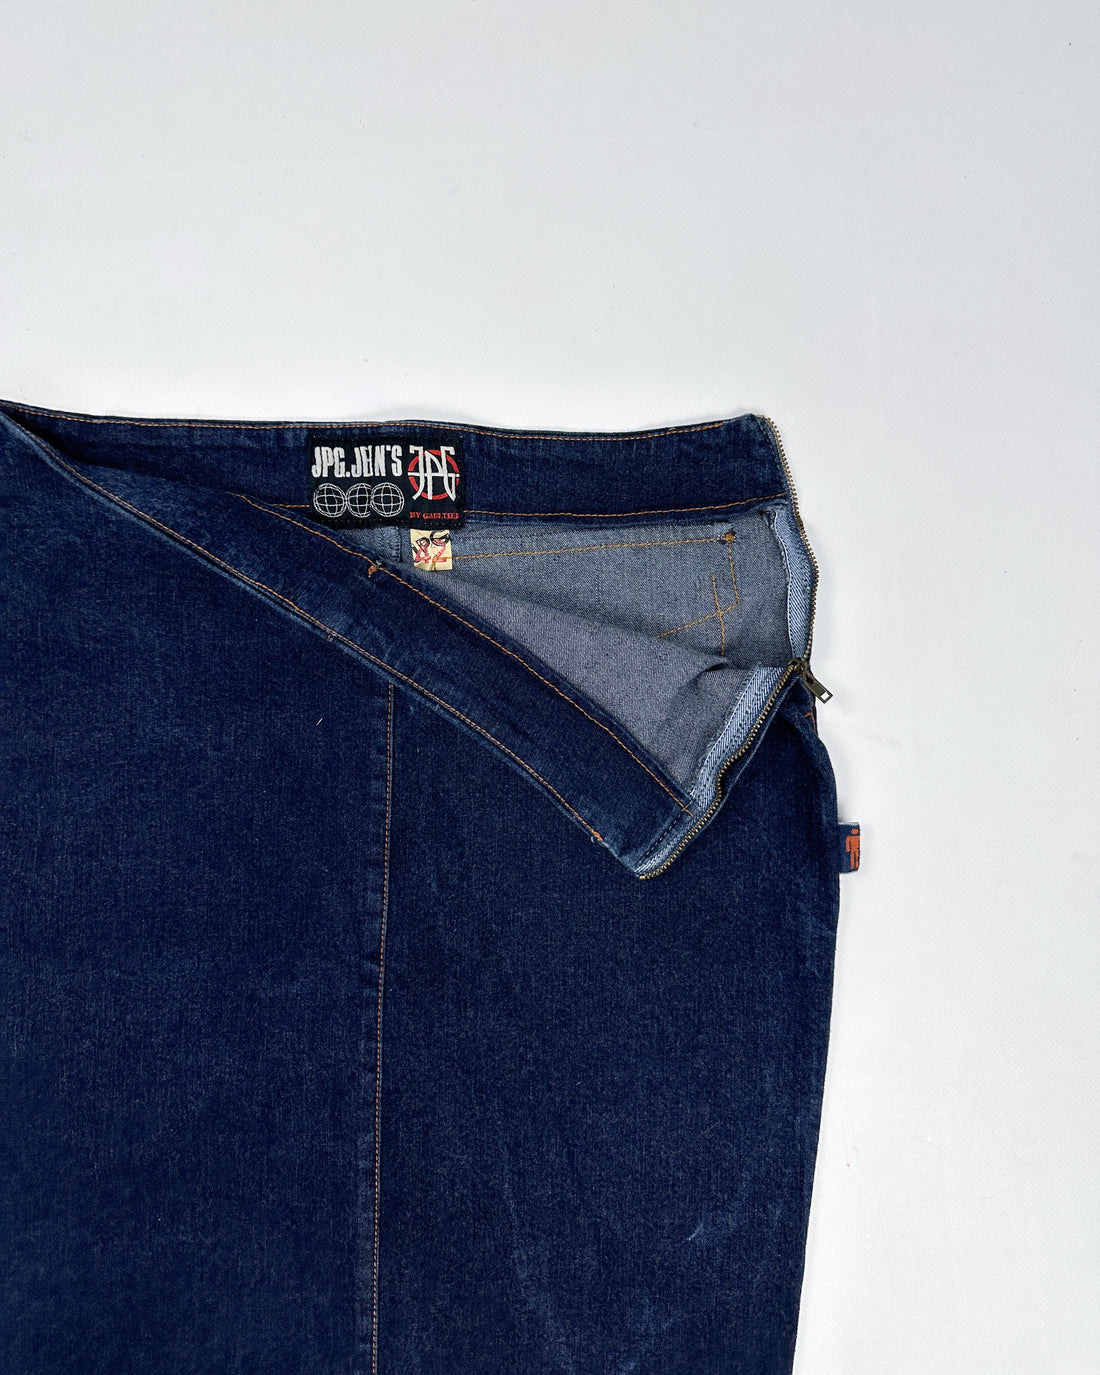 Jean Paul Gaultier Dark Denim Skirt 1990's